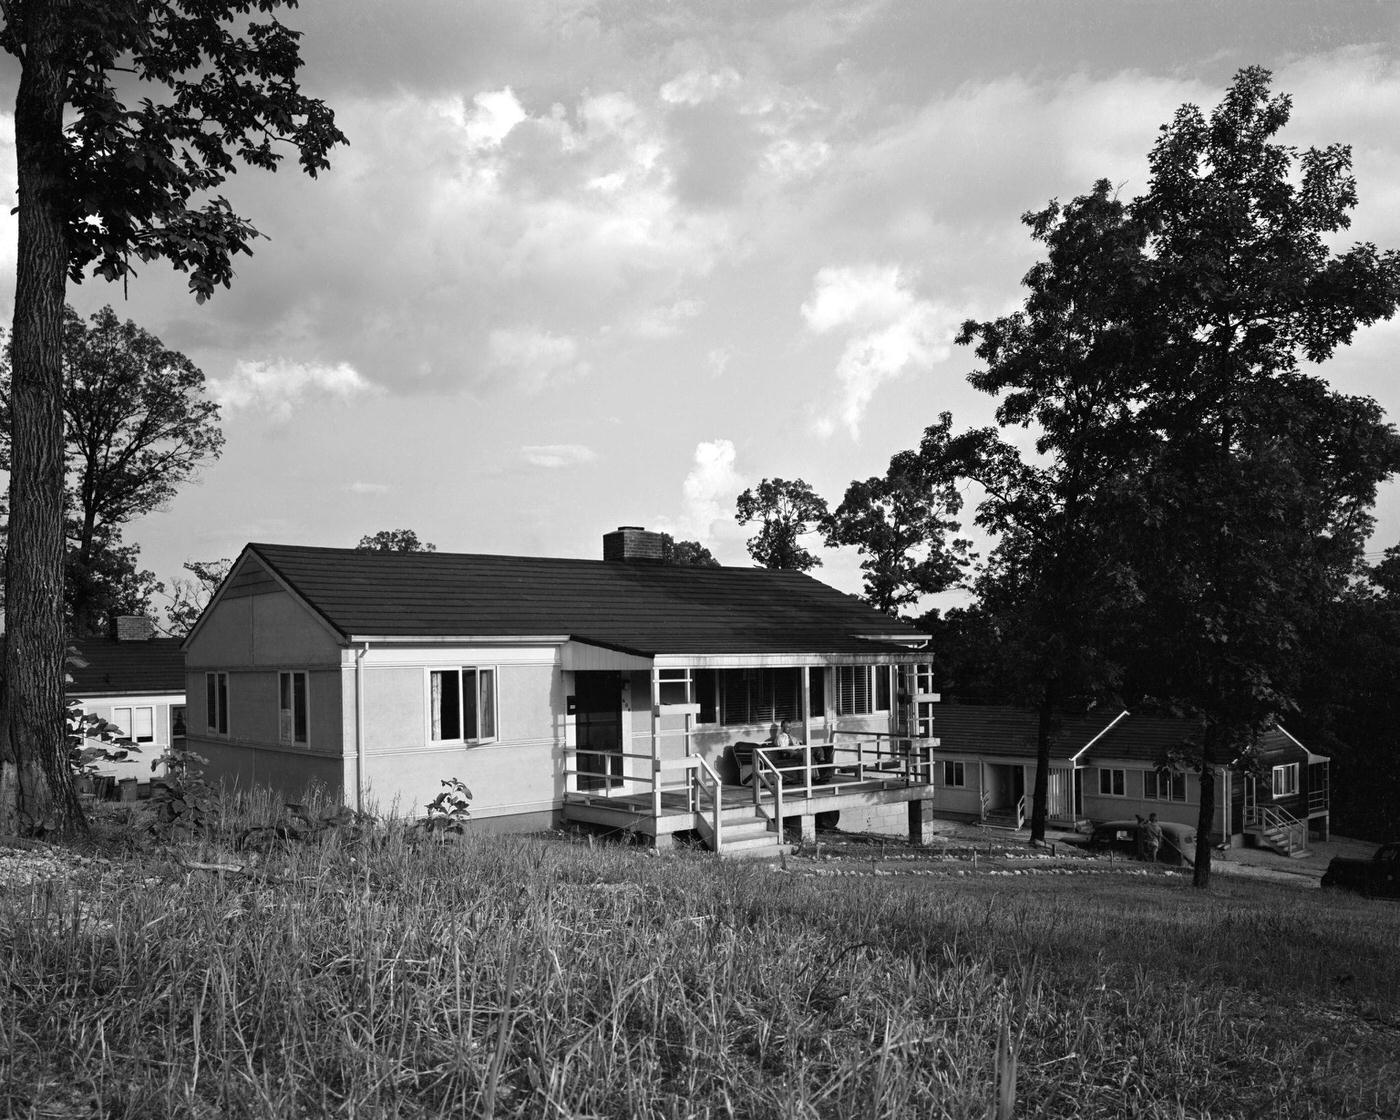 House in Oak Ridge, Tennessee, 1944.